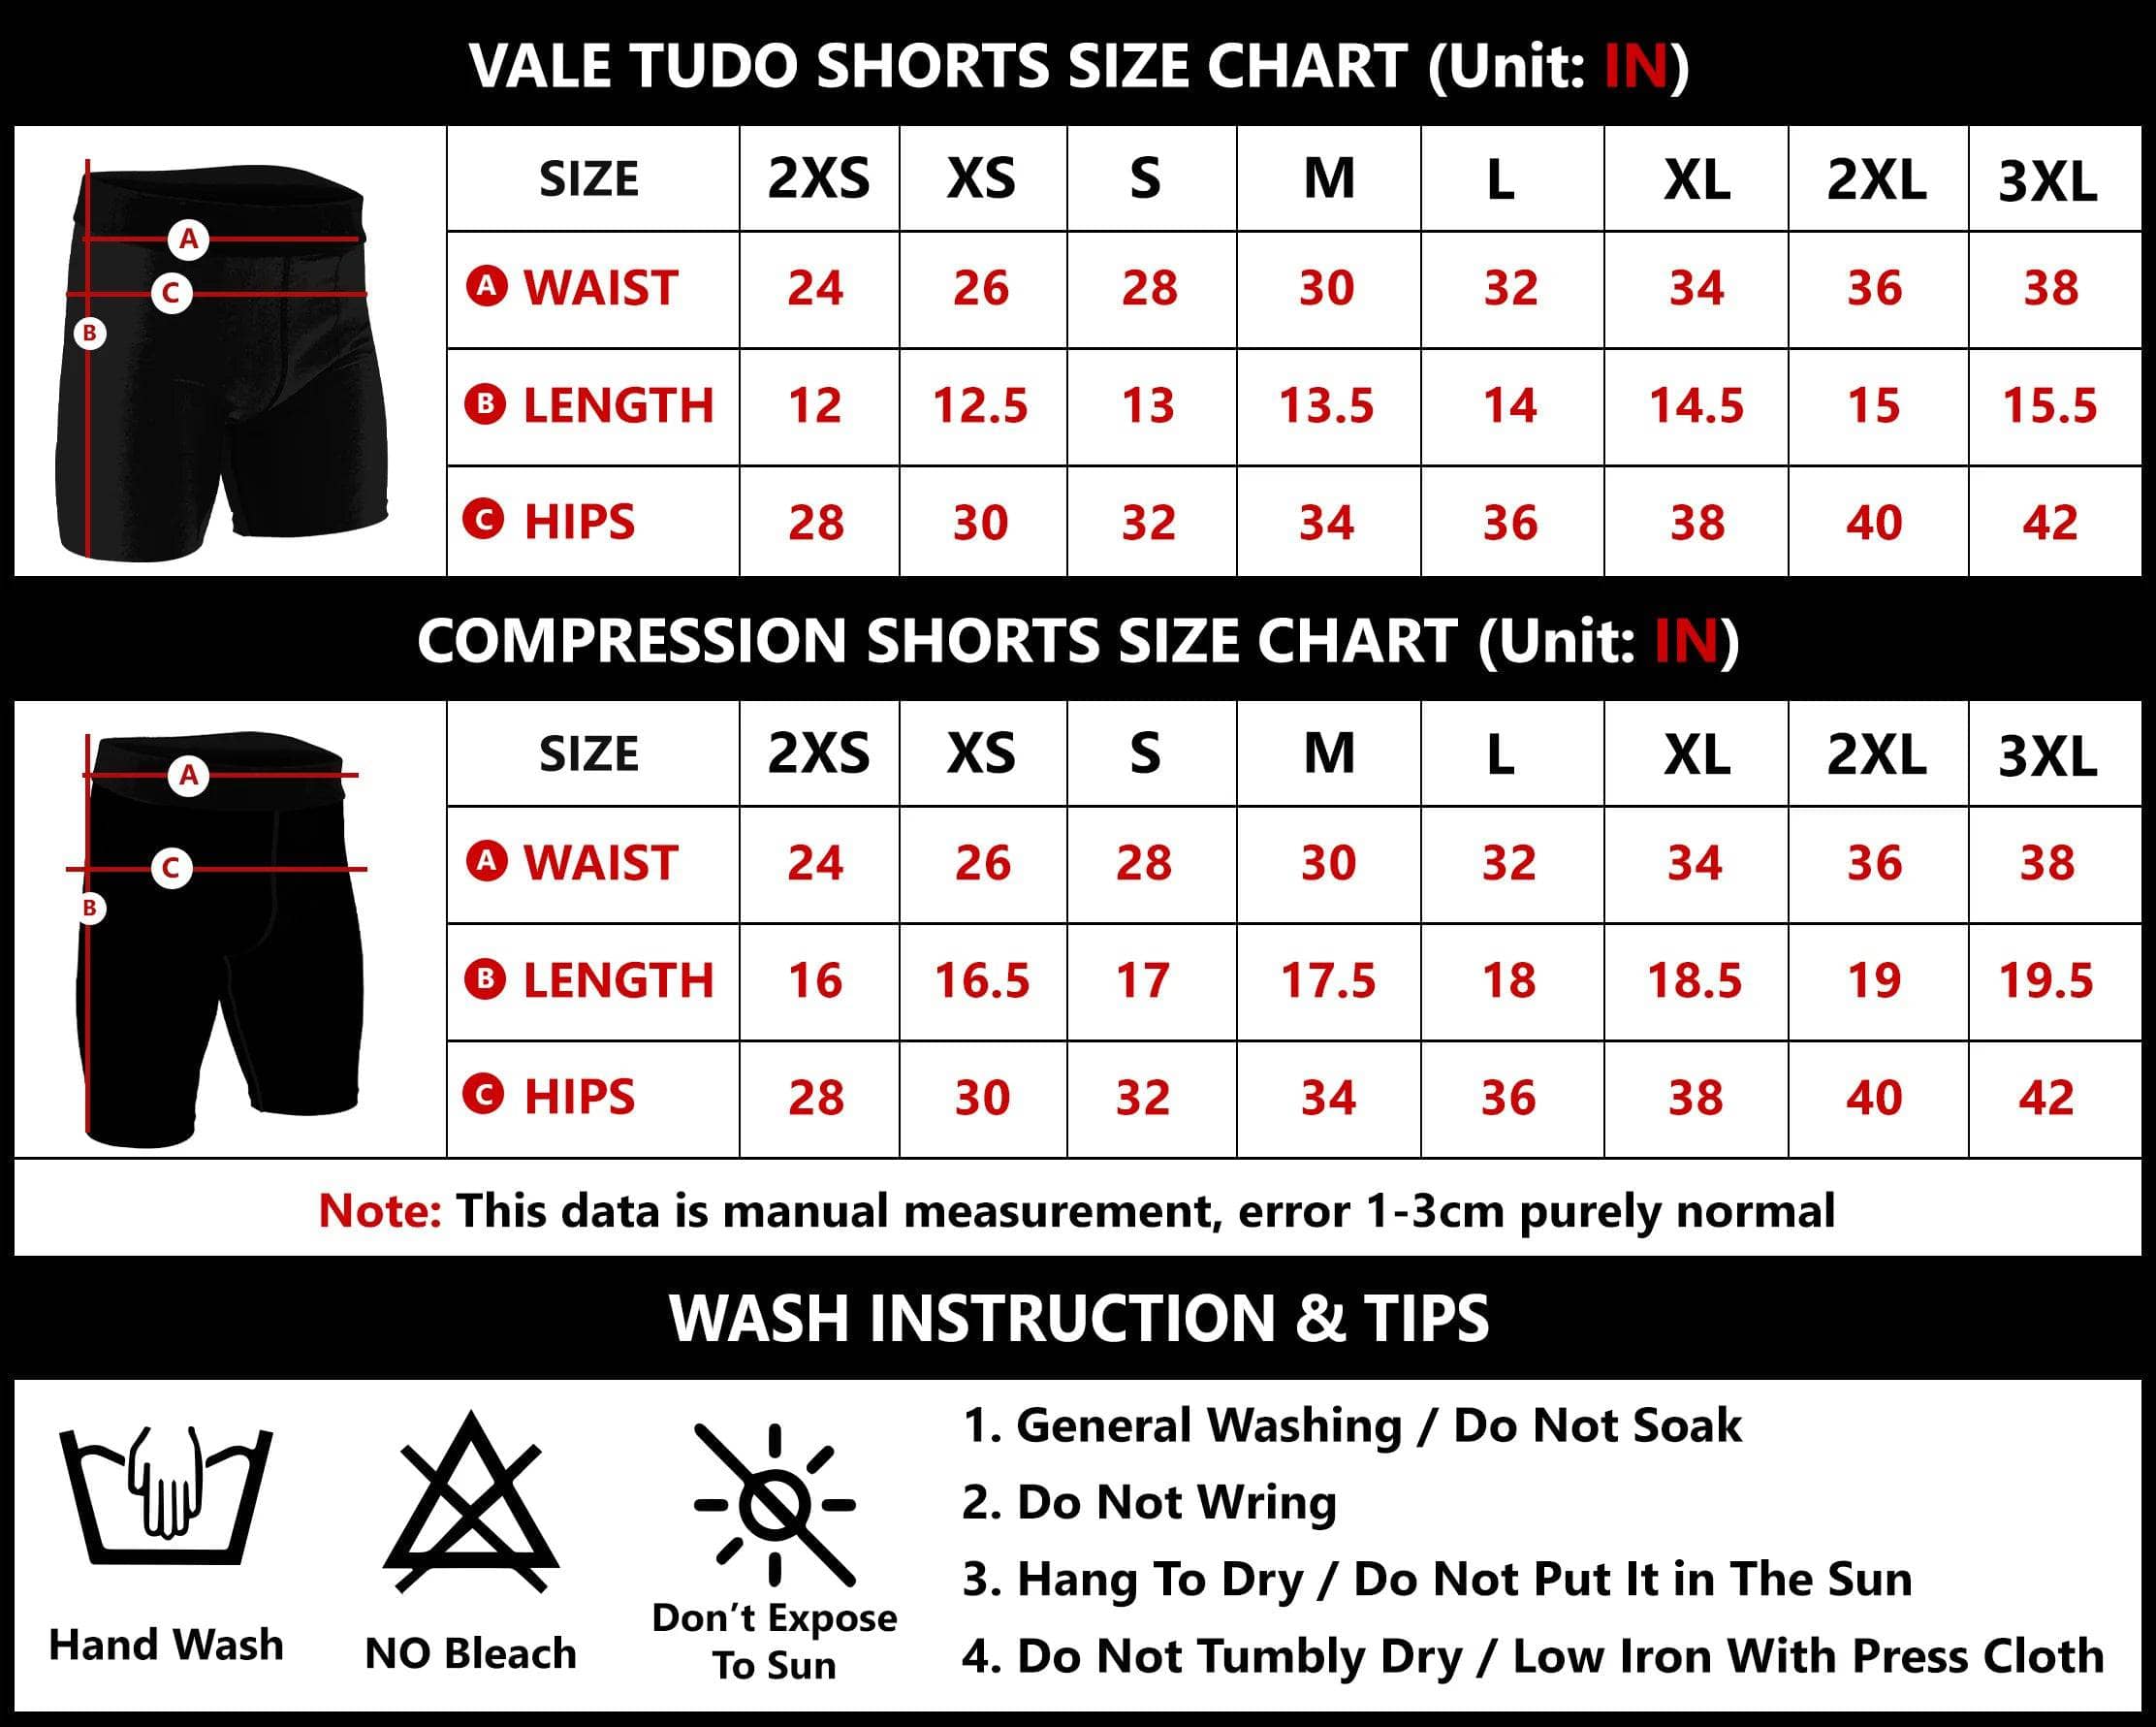 Samurai Warrior BJJ/MMA Compression Shorts XMARTIAL